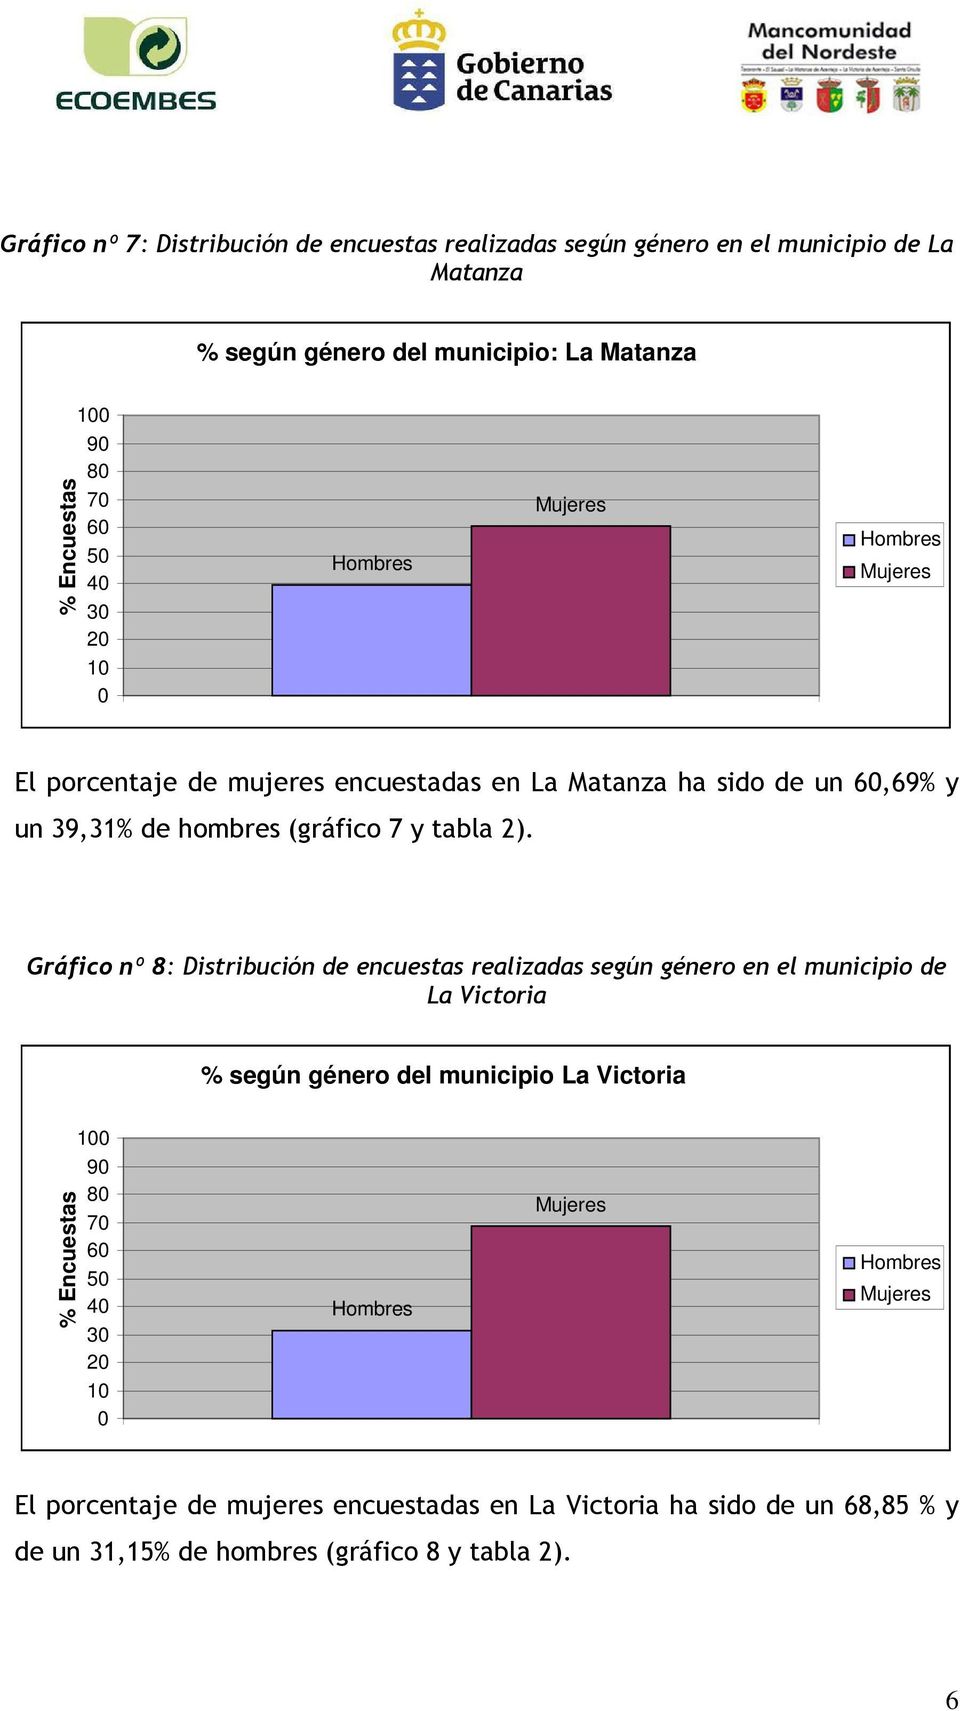 Gráfico nº 8: Distribución de encuestas realizadas según género en el municipio de La Victoria según género del municipio La Victoria Encuestas 1 9 8 7 6 5